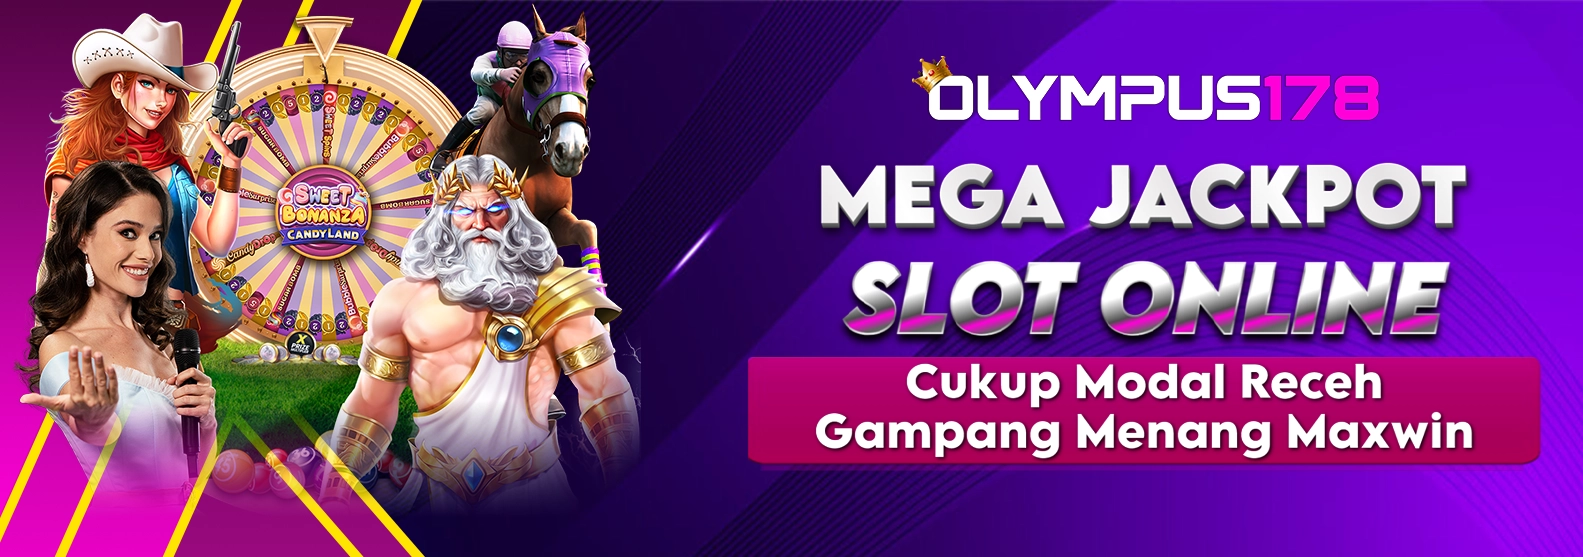 Mega Jackpot Slot Online